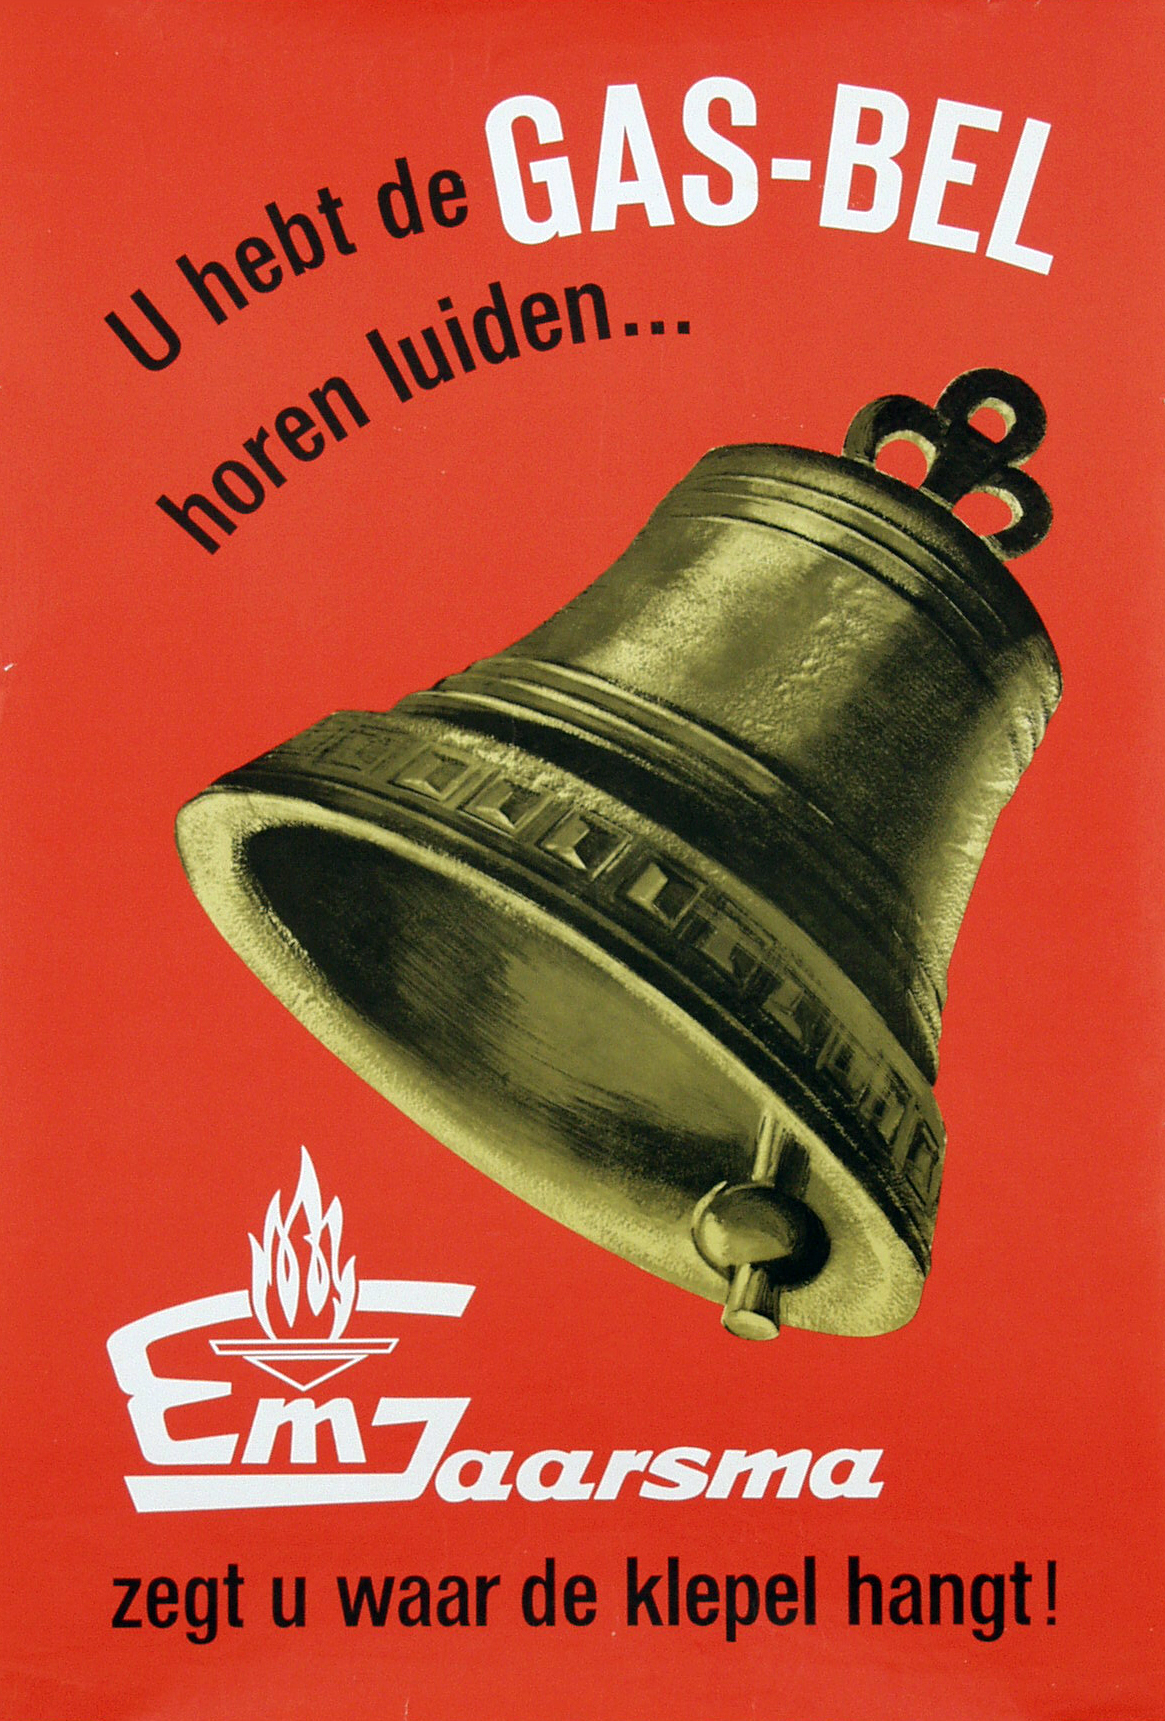 Affiche voor gashaarden uit 1964. Bron: van Sabben Poster Auctions.